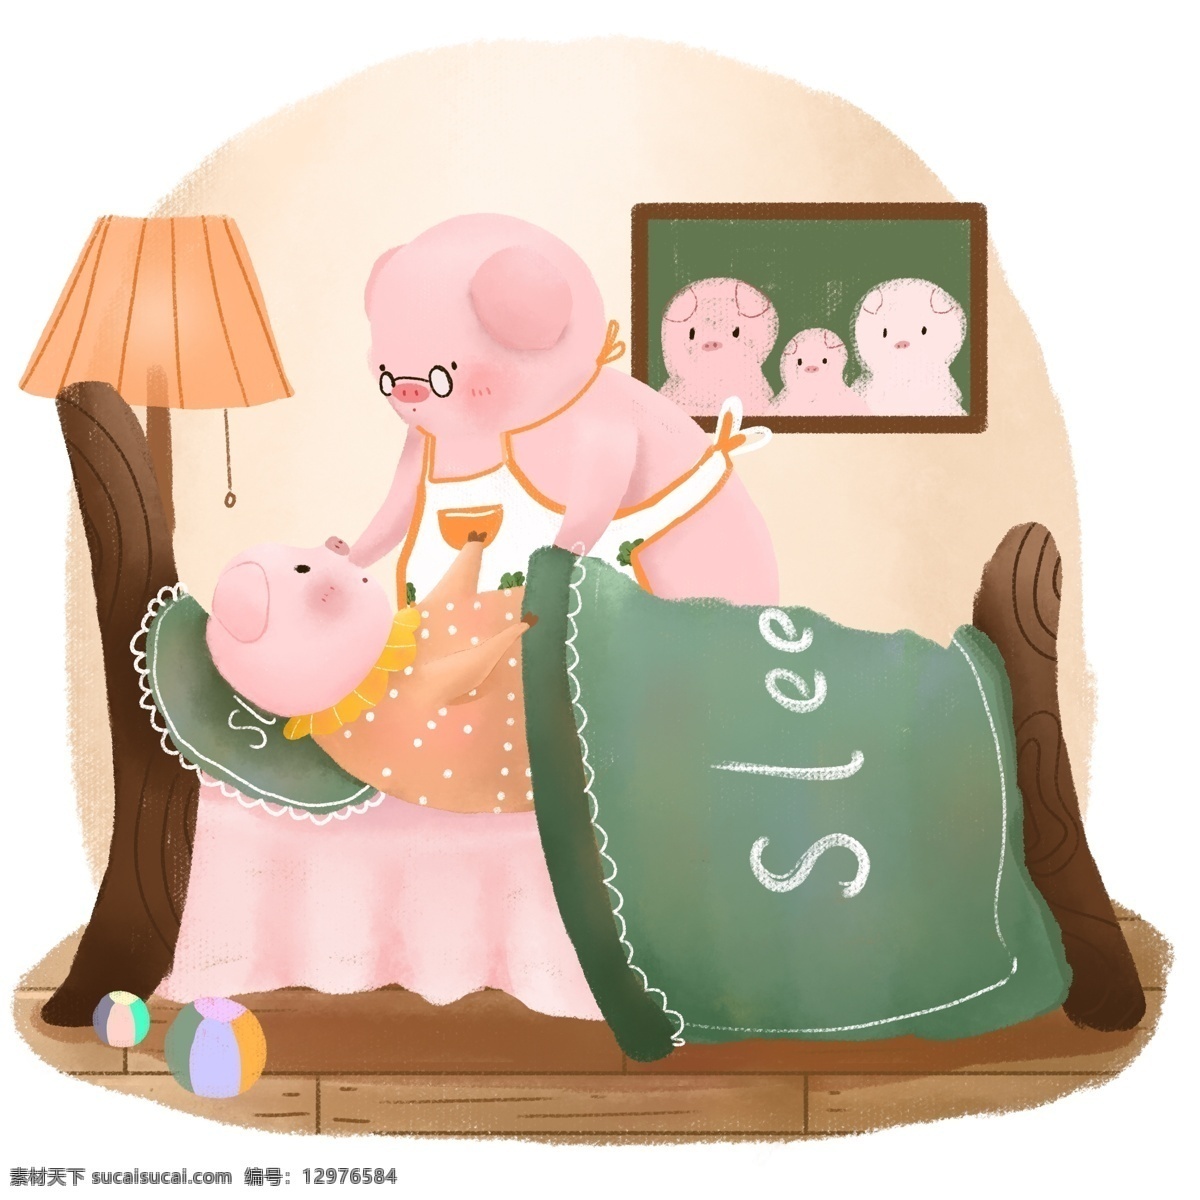 生肖 动物 猪 卡通 可爱 儿童 手绘 插画 晚安 睡觉 元素 卡通可爱